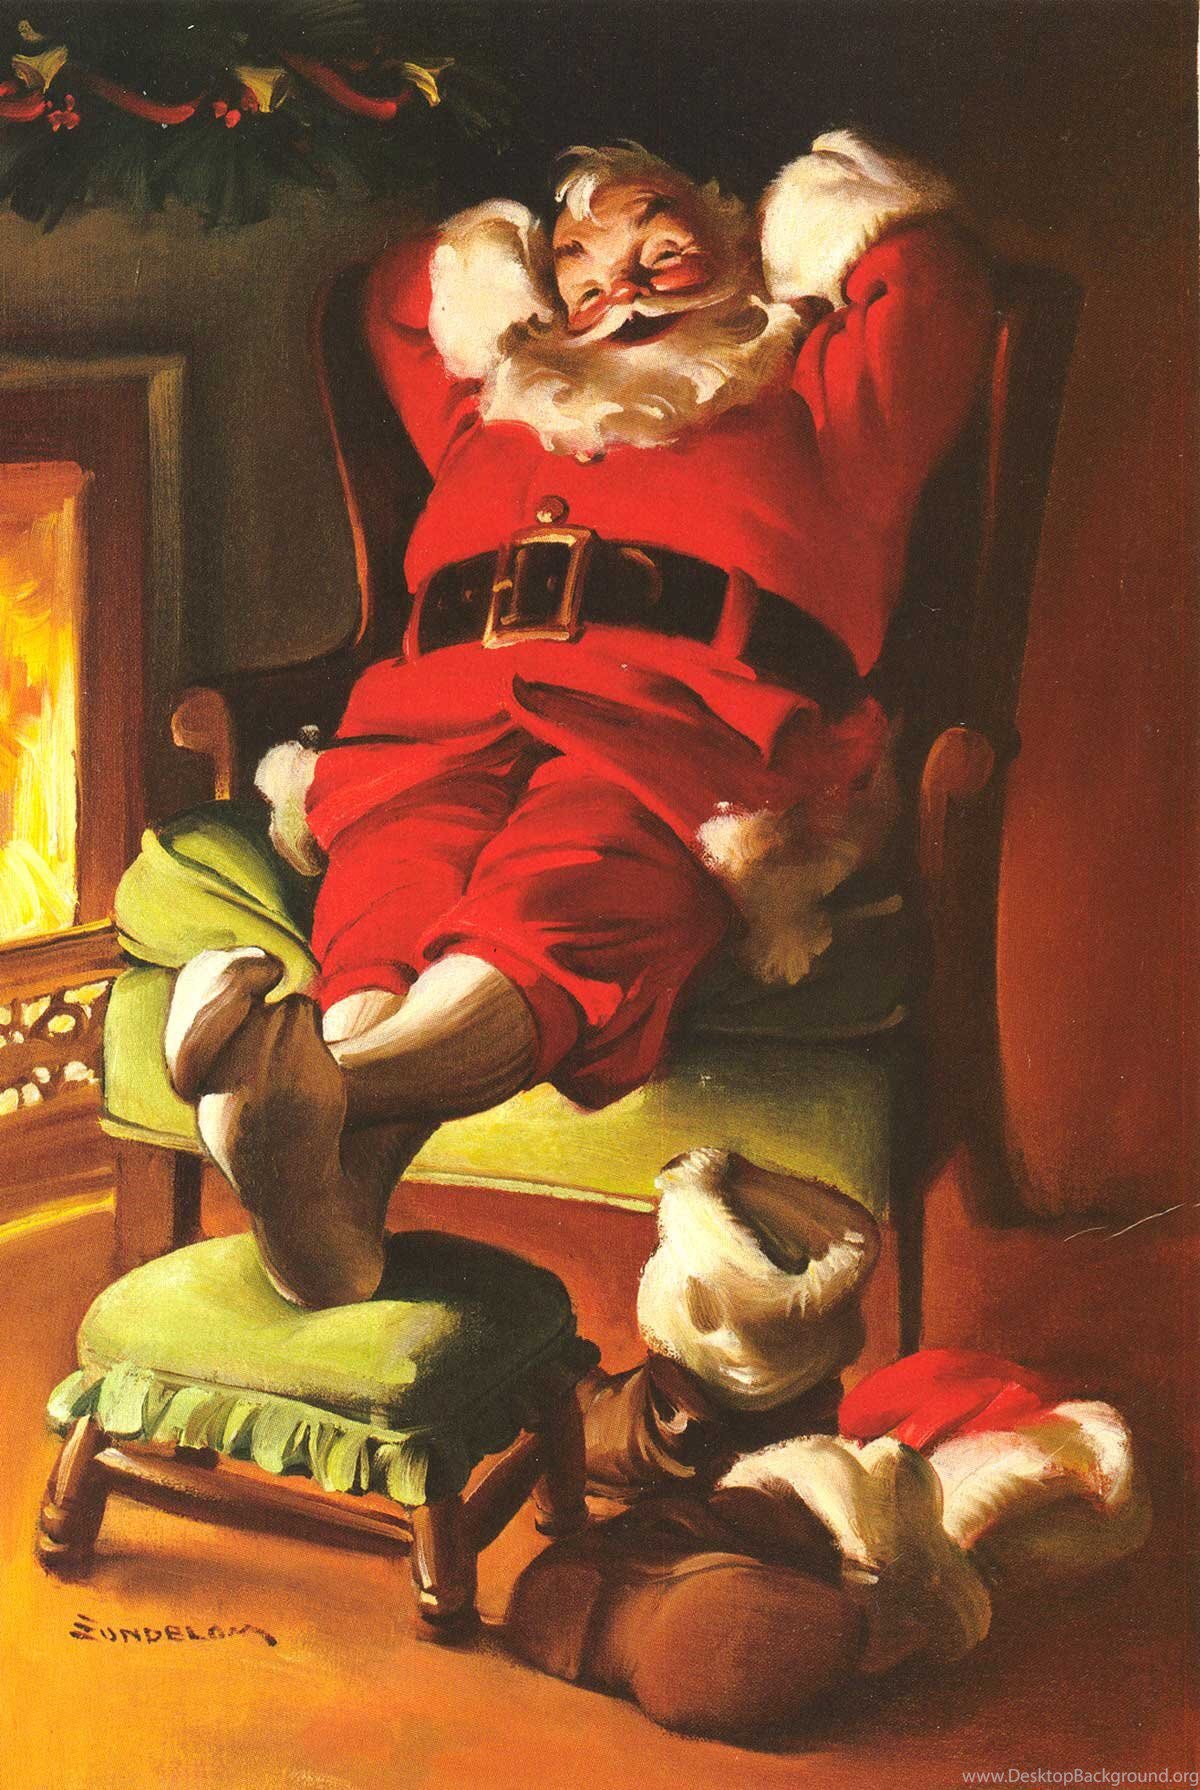 たかし クリスマス ノーマンロックウェル サンタ絵と謂えば ノーマンロックウェル画伯が至高でつね T Co N7p2ae1y2u Twitter